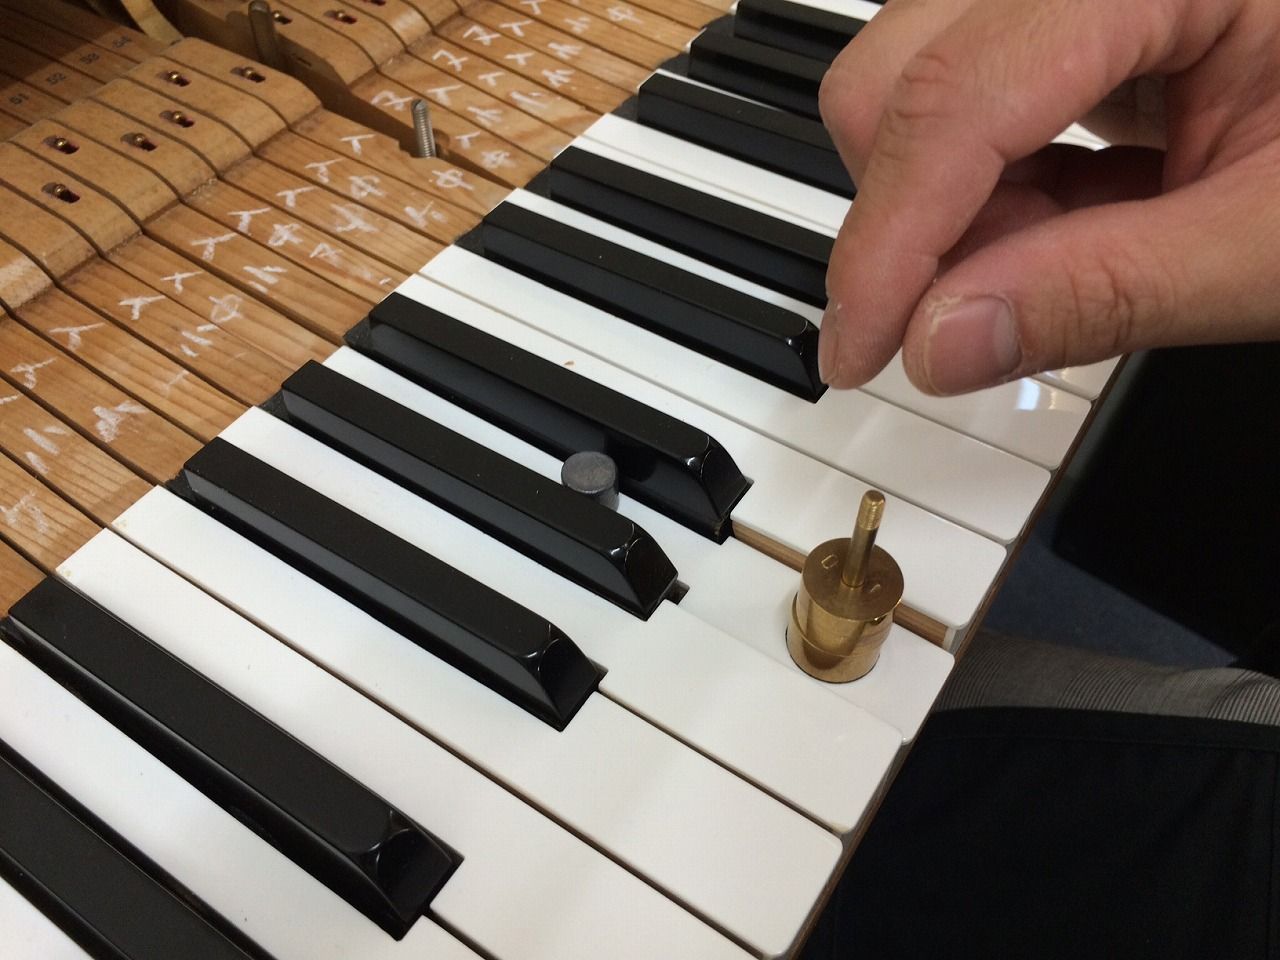 鍵盤 タッチ は重い方が良いのか 軽い方が良いのか Vol 1 ピアノ選びのアラカルト